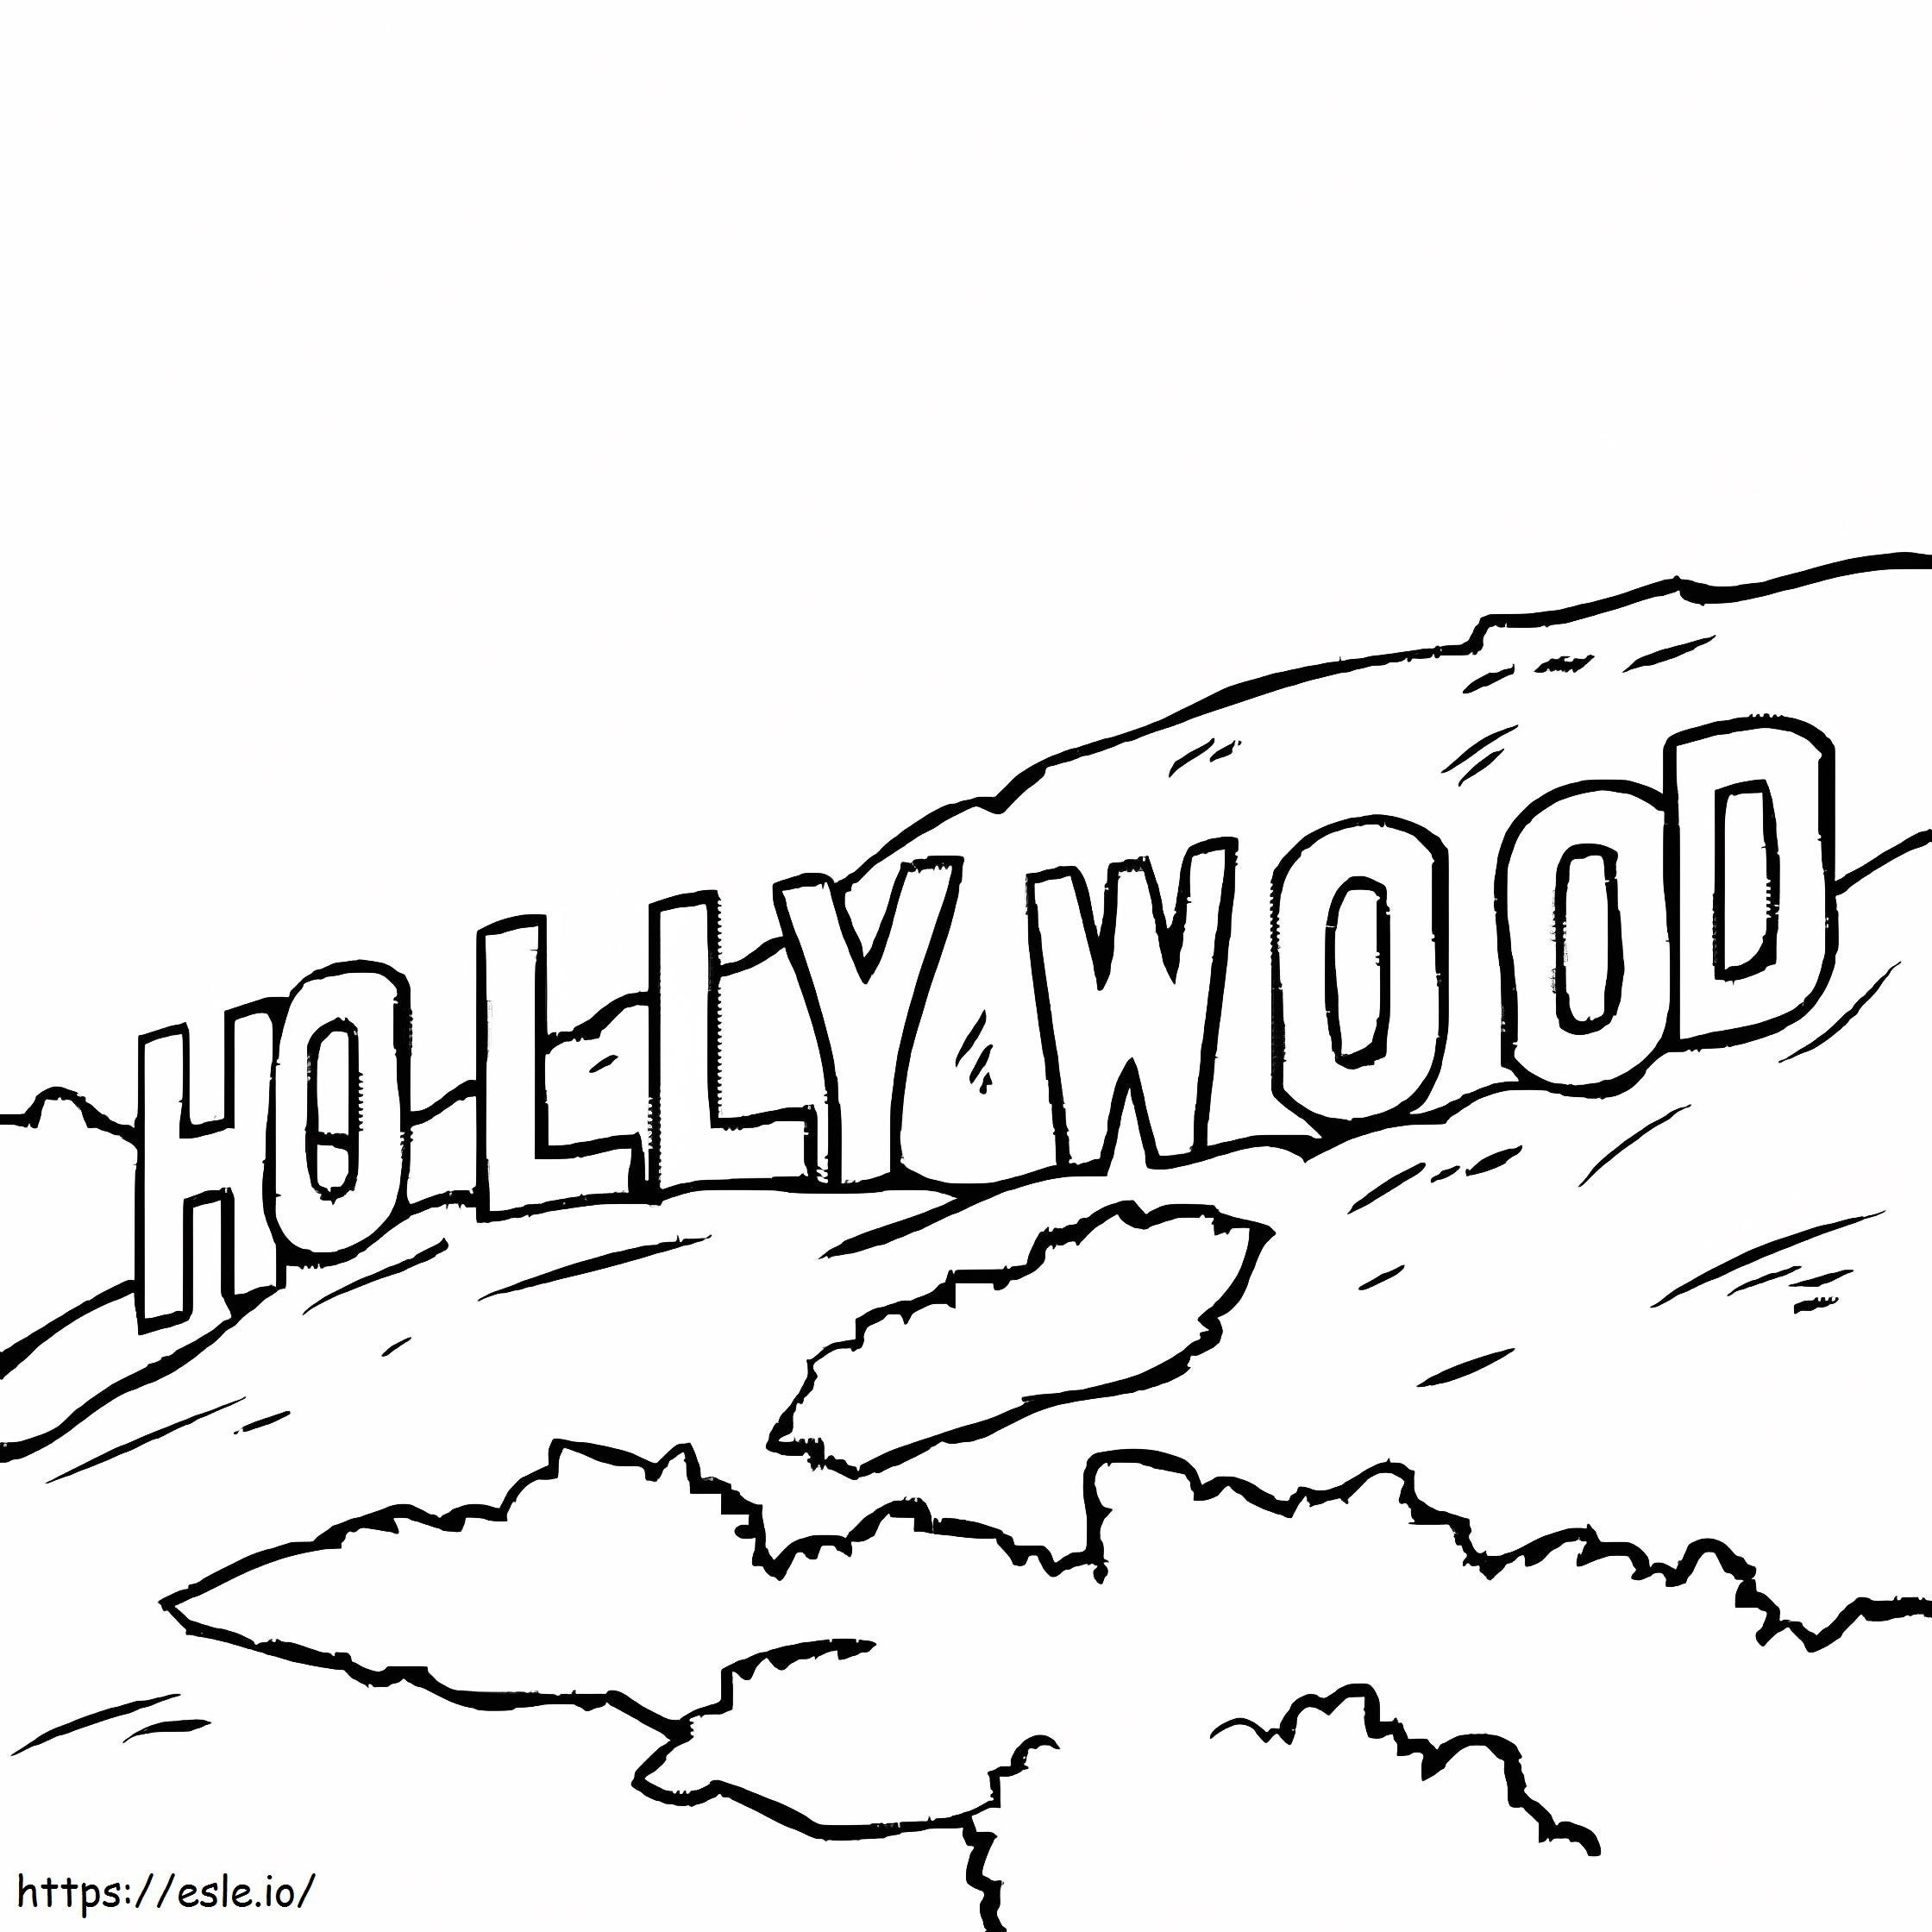 Imprimir Hollywood para colorear